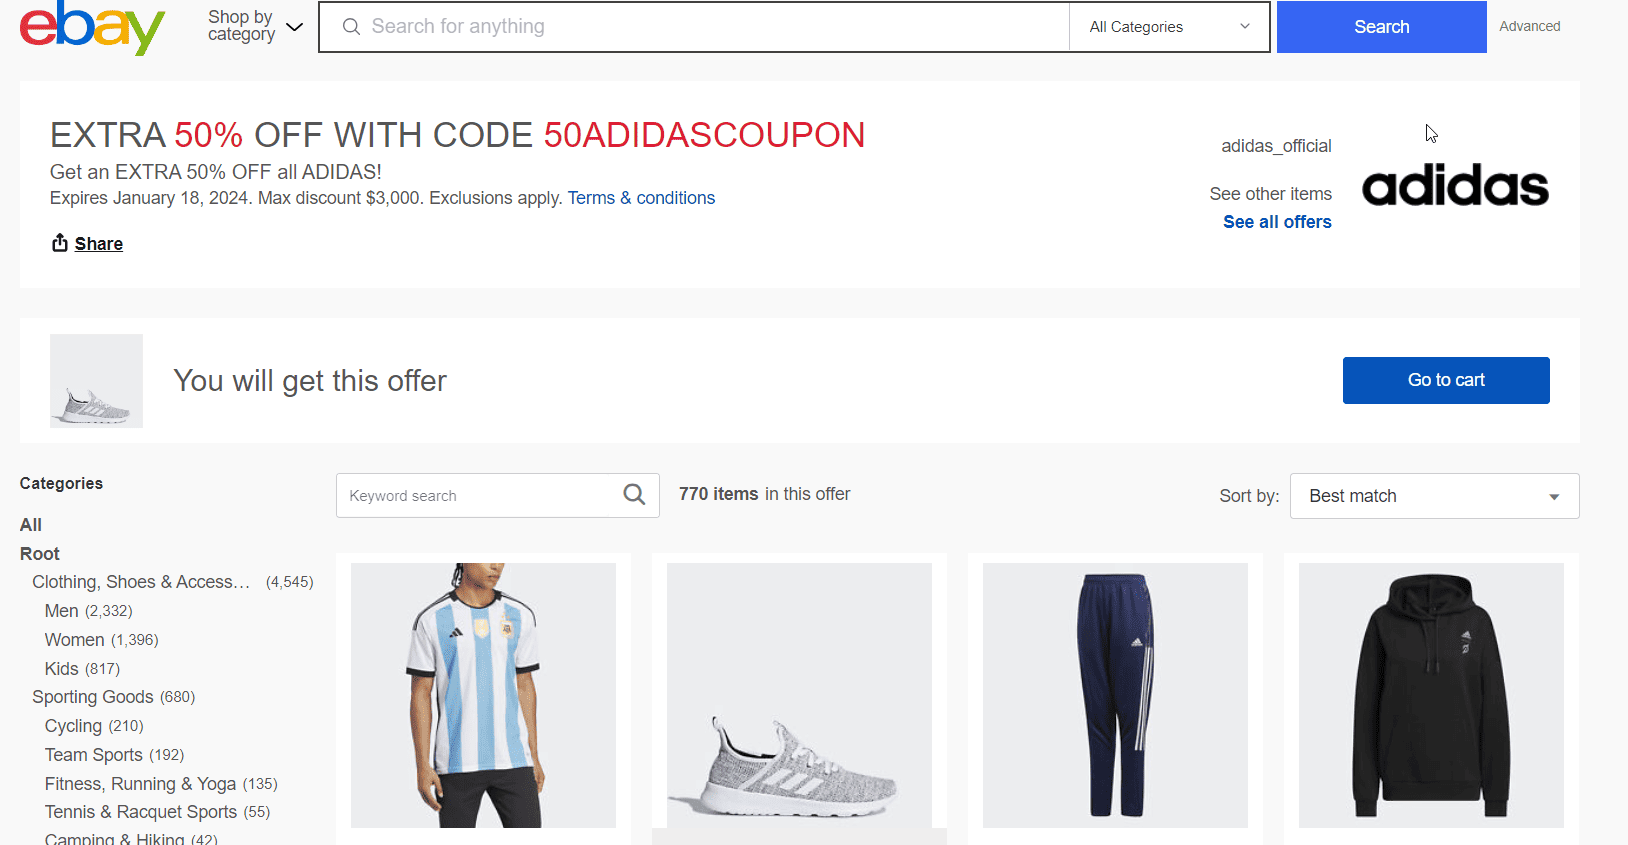 eBay折扣码2024优惠码 adidas阿迪达斯旗舰店精选服饰鞋履额外5折促销